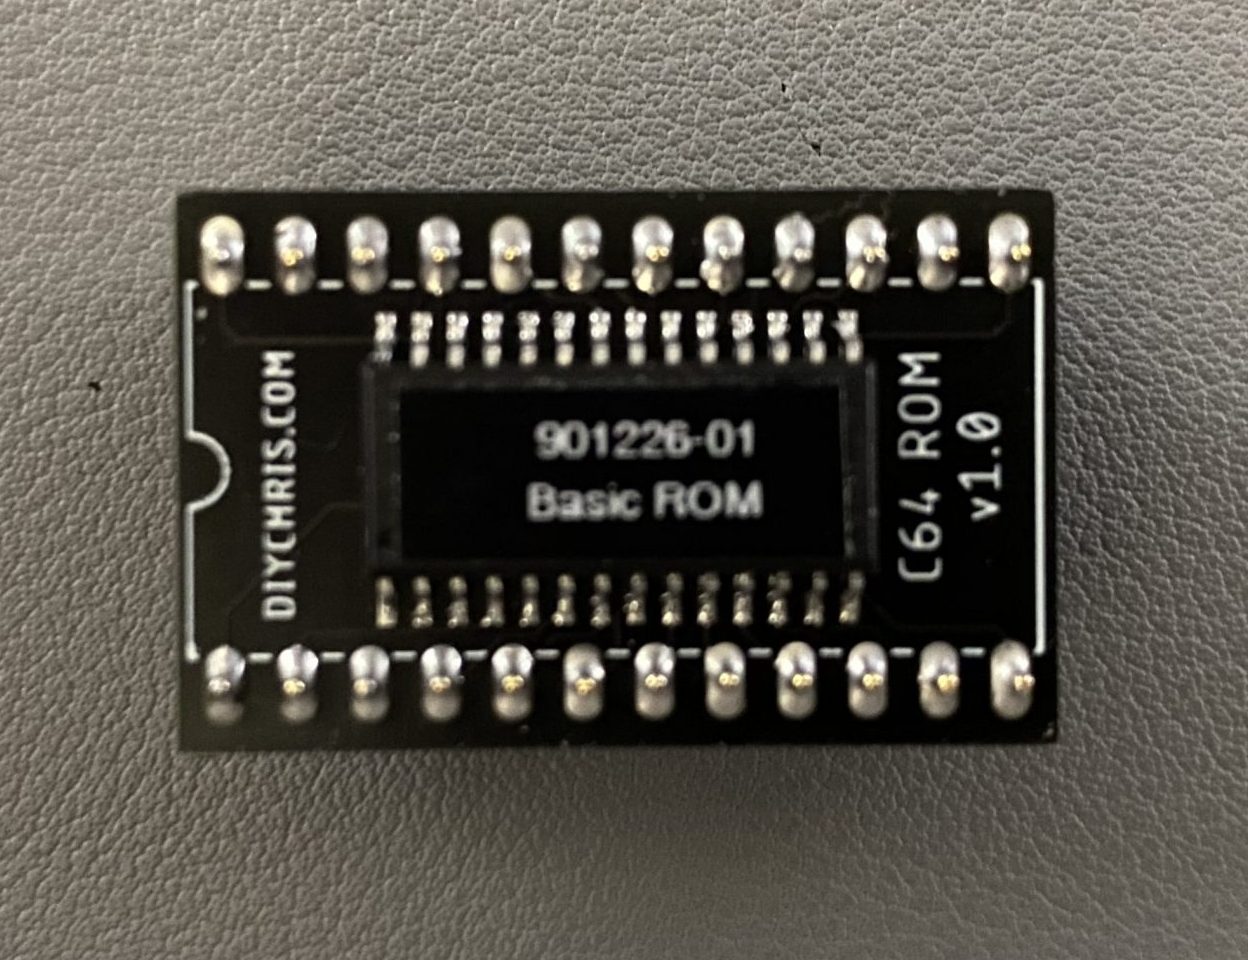 Commodore 901226-01 C64 Basic Rom 